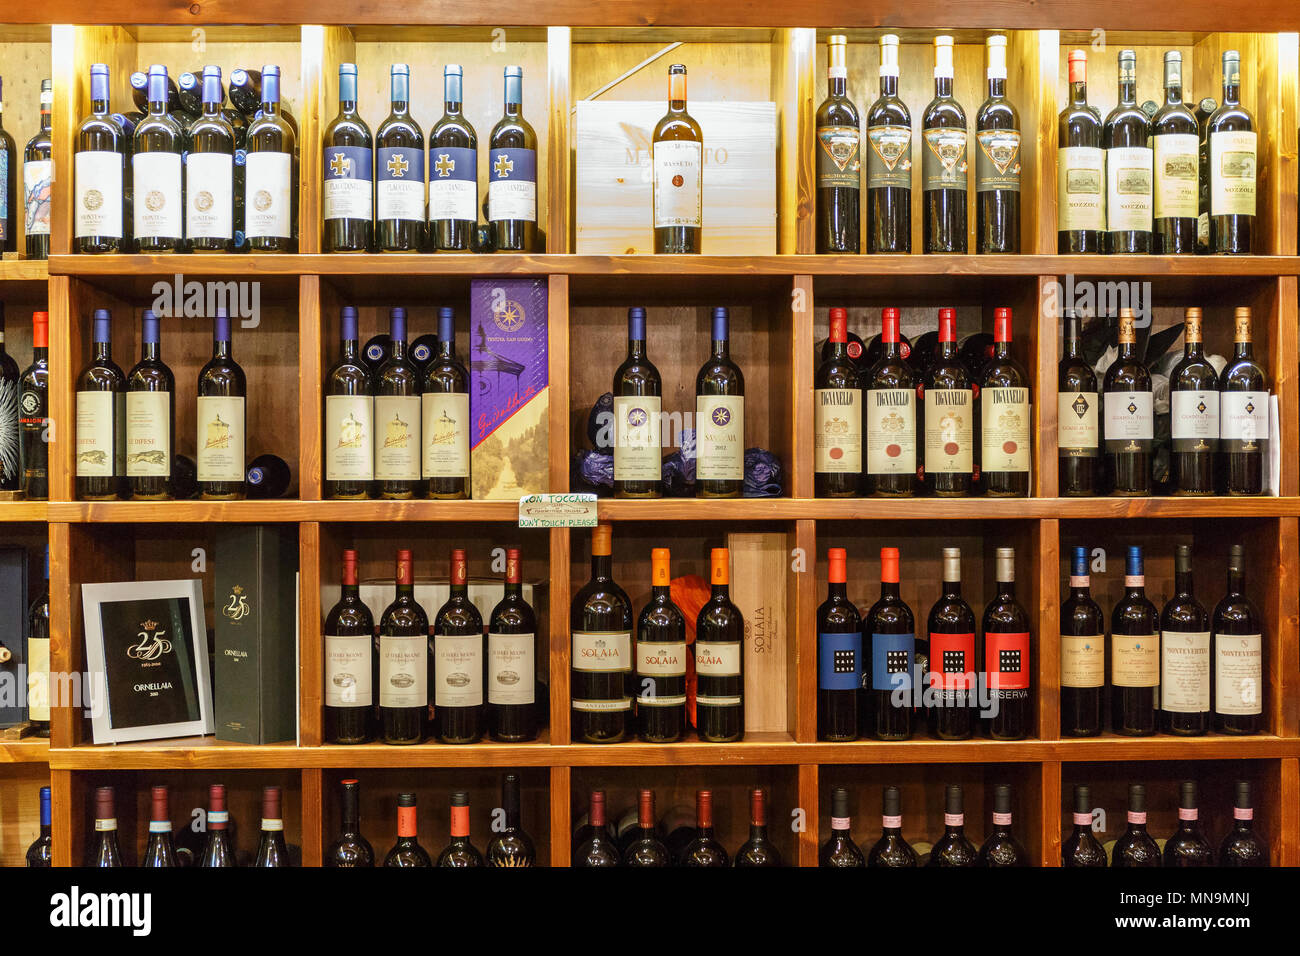 Magasin de vin avec des bouteilles de vin sur des étagères Banque D'Images